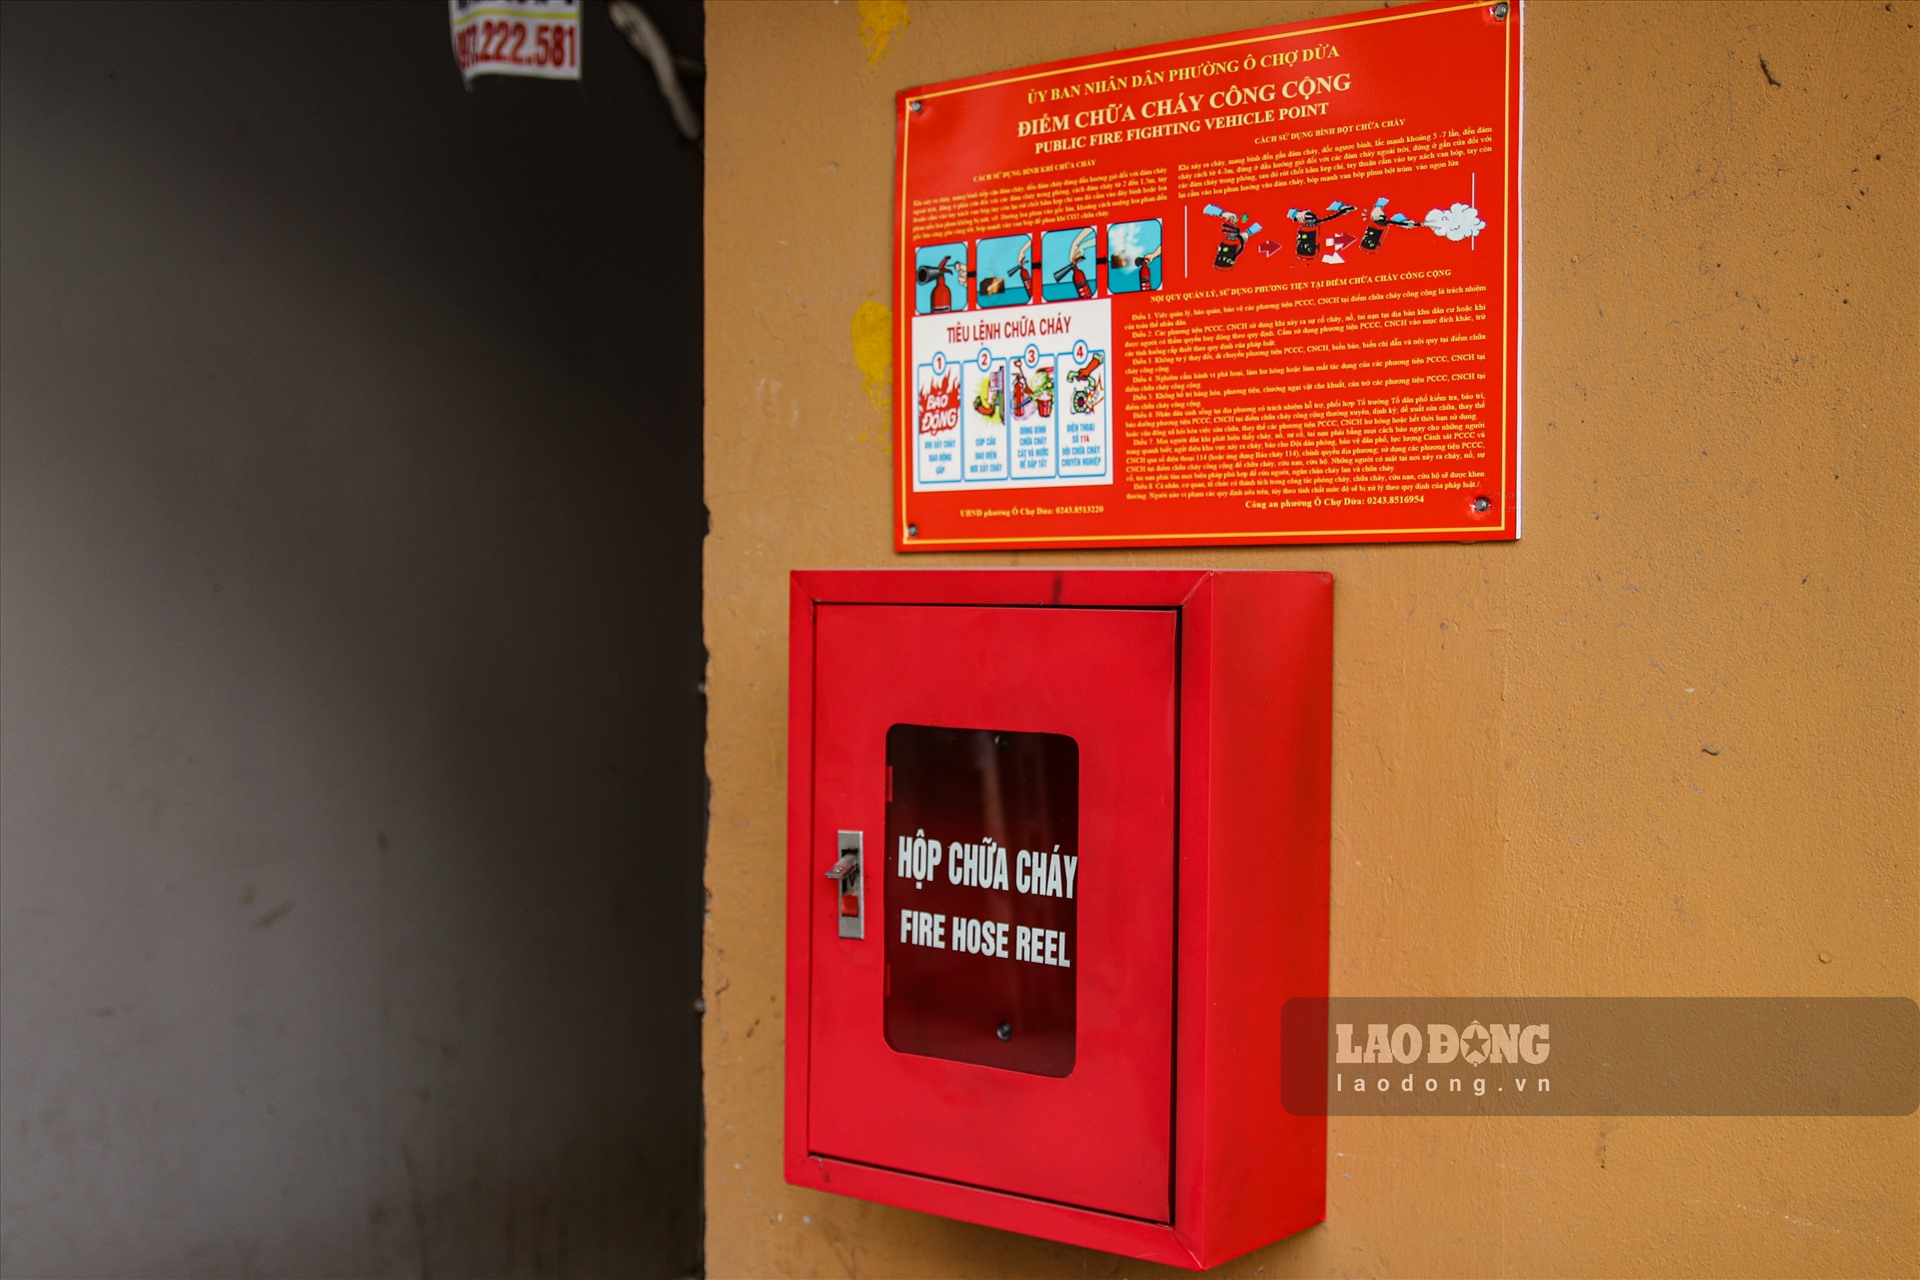 Tình trạng hộp chữa cháy được lắp đặt nhưng không có công cụ chữa cháy cũng xảy ra tại phường Ô Chợ Dừa (Đống Đa) và phường Quan Hoa (Cầu Giấy).